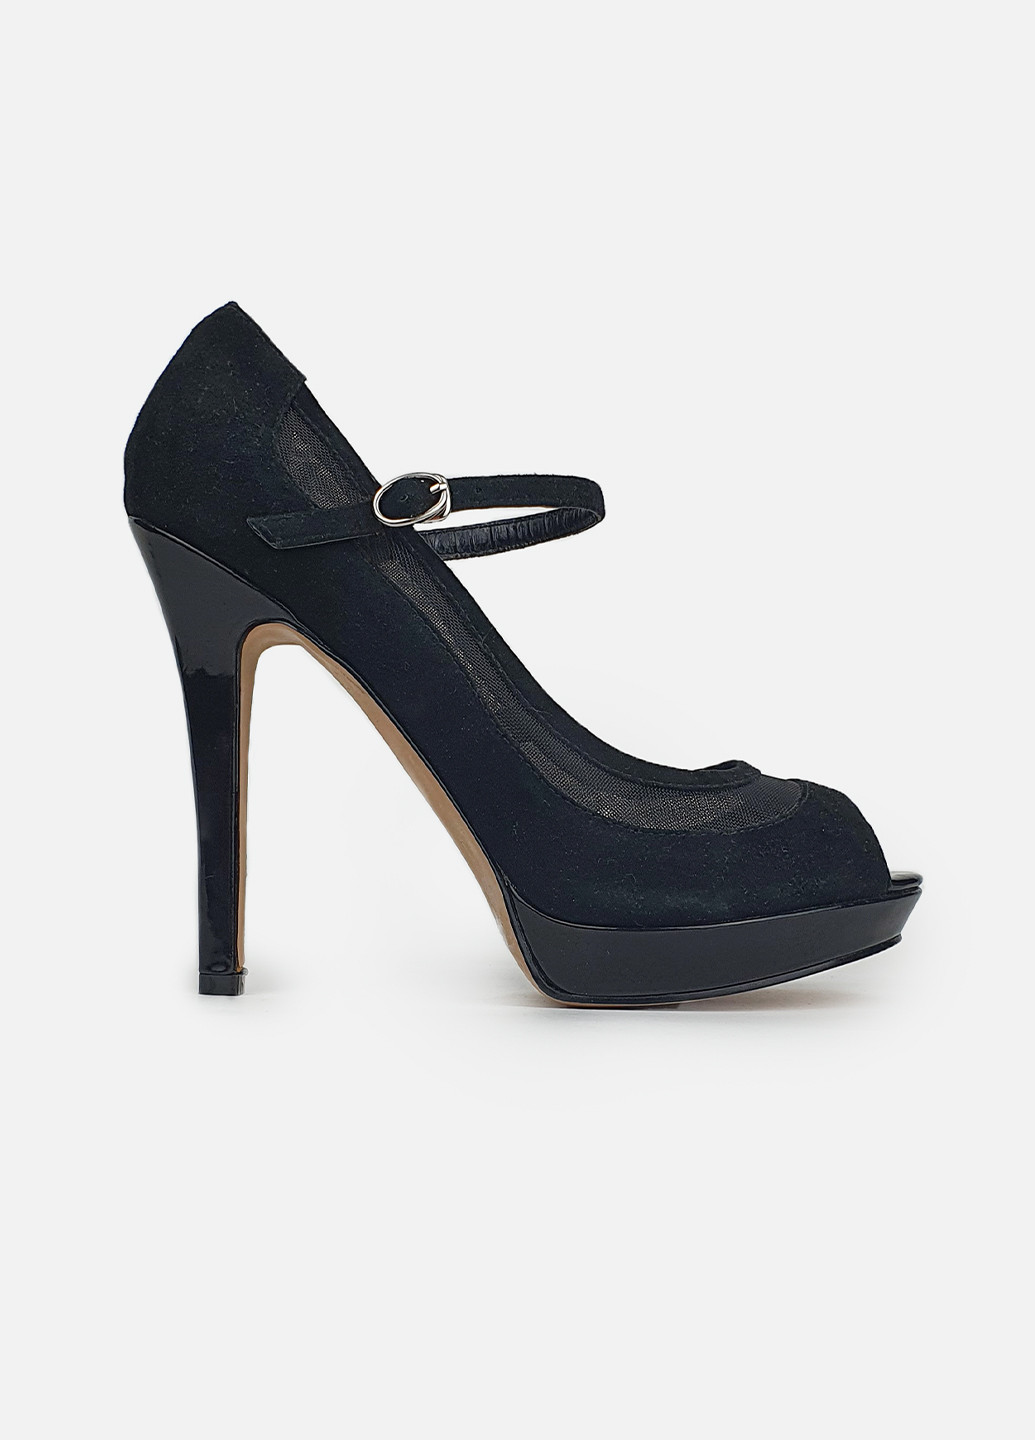 Женские туфли с ремешком черные замшевые на каблуке Basconi